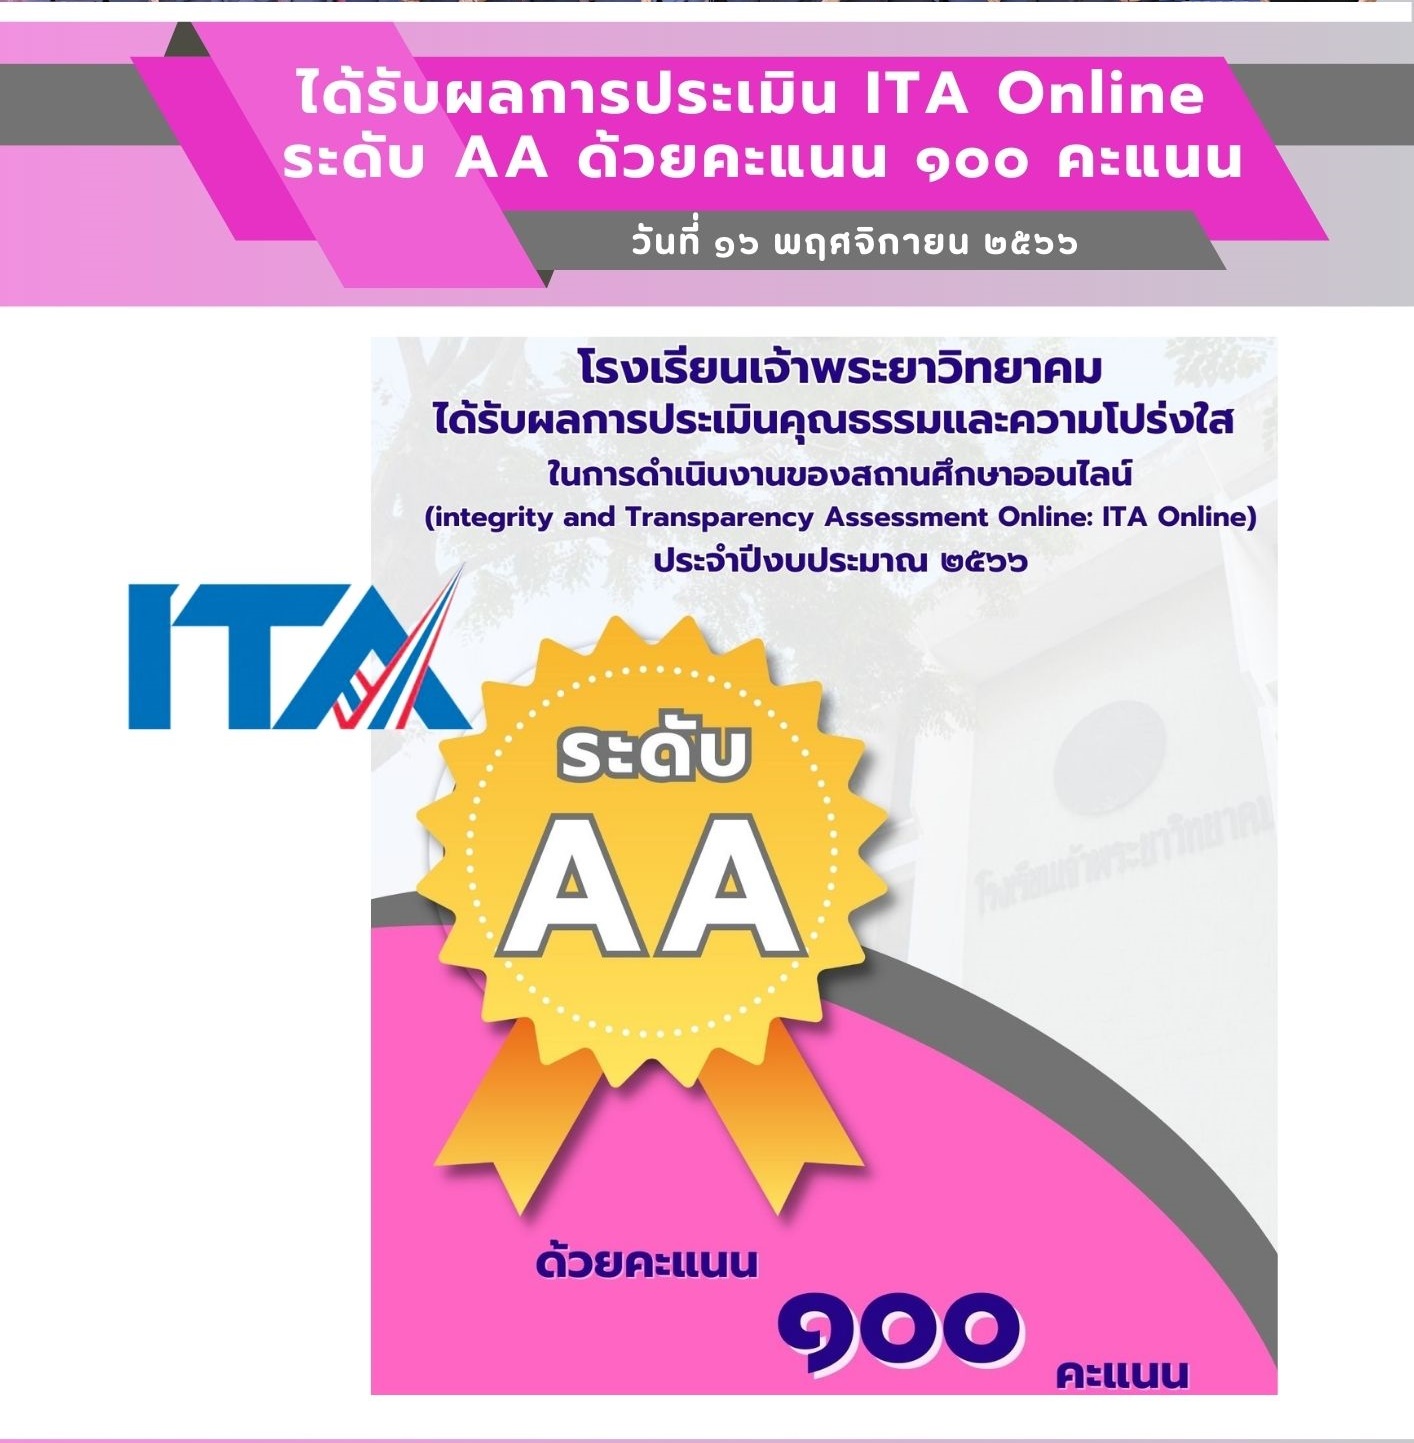 ได้รับผลการประเมิน ITA Online ระดับ AA